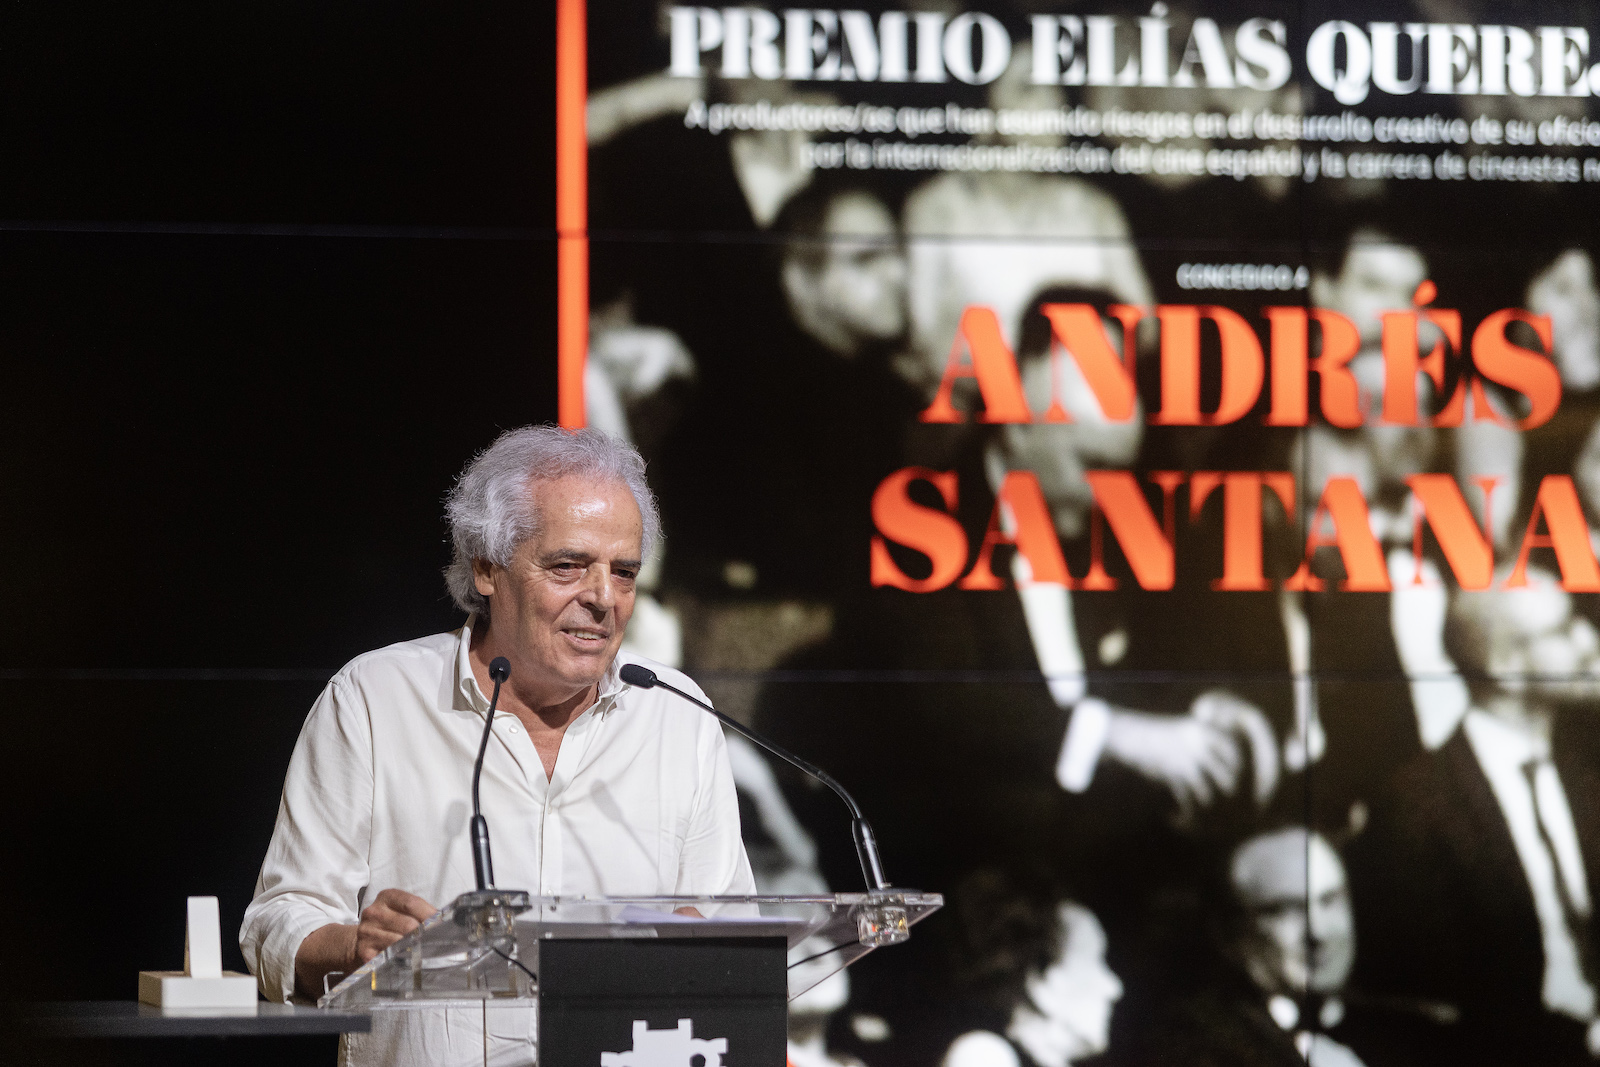 Andrés Santana recoge el primer Premio Elías Querejeta de la Academia de Cine en San Sebastián